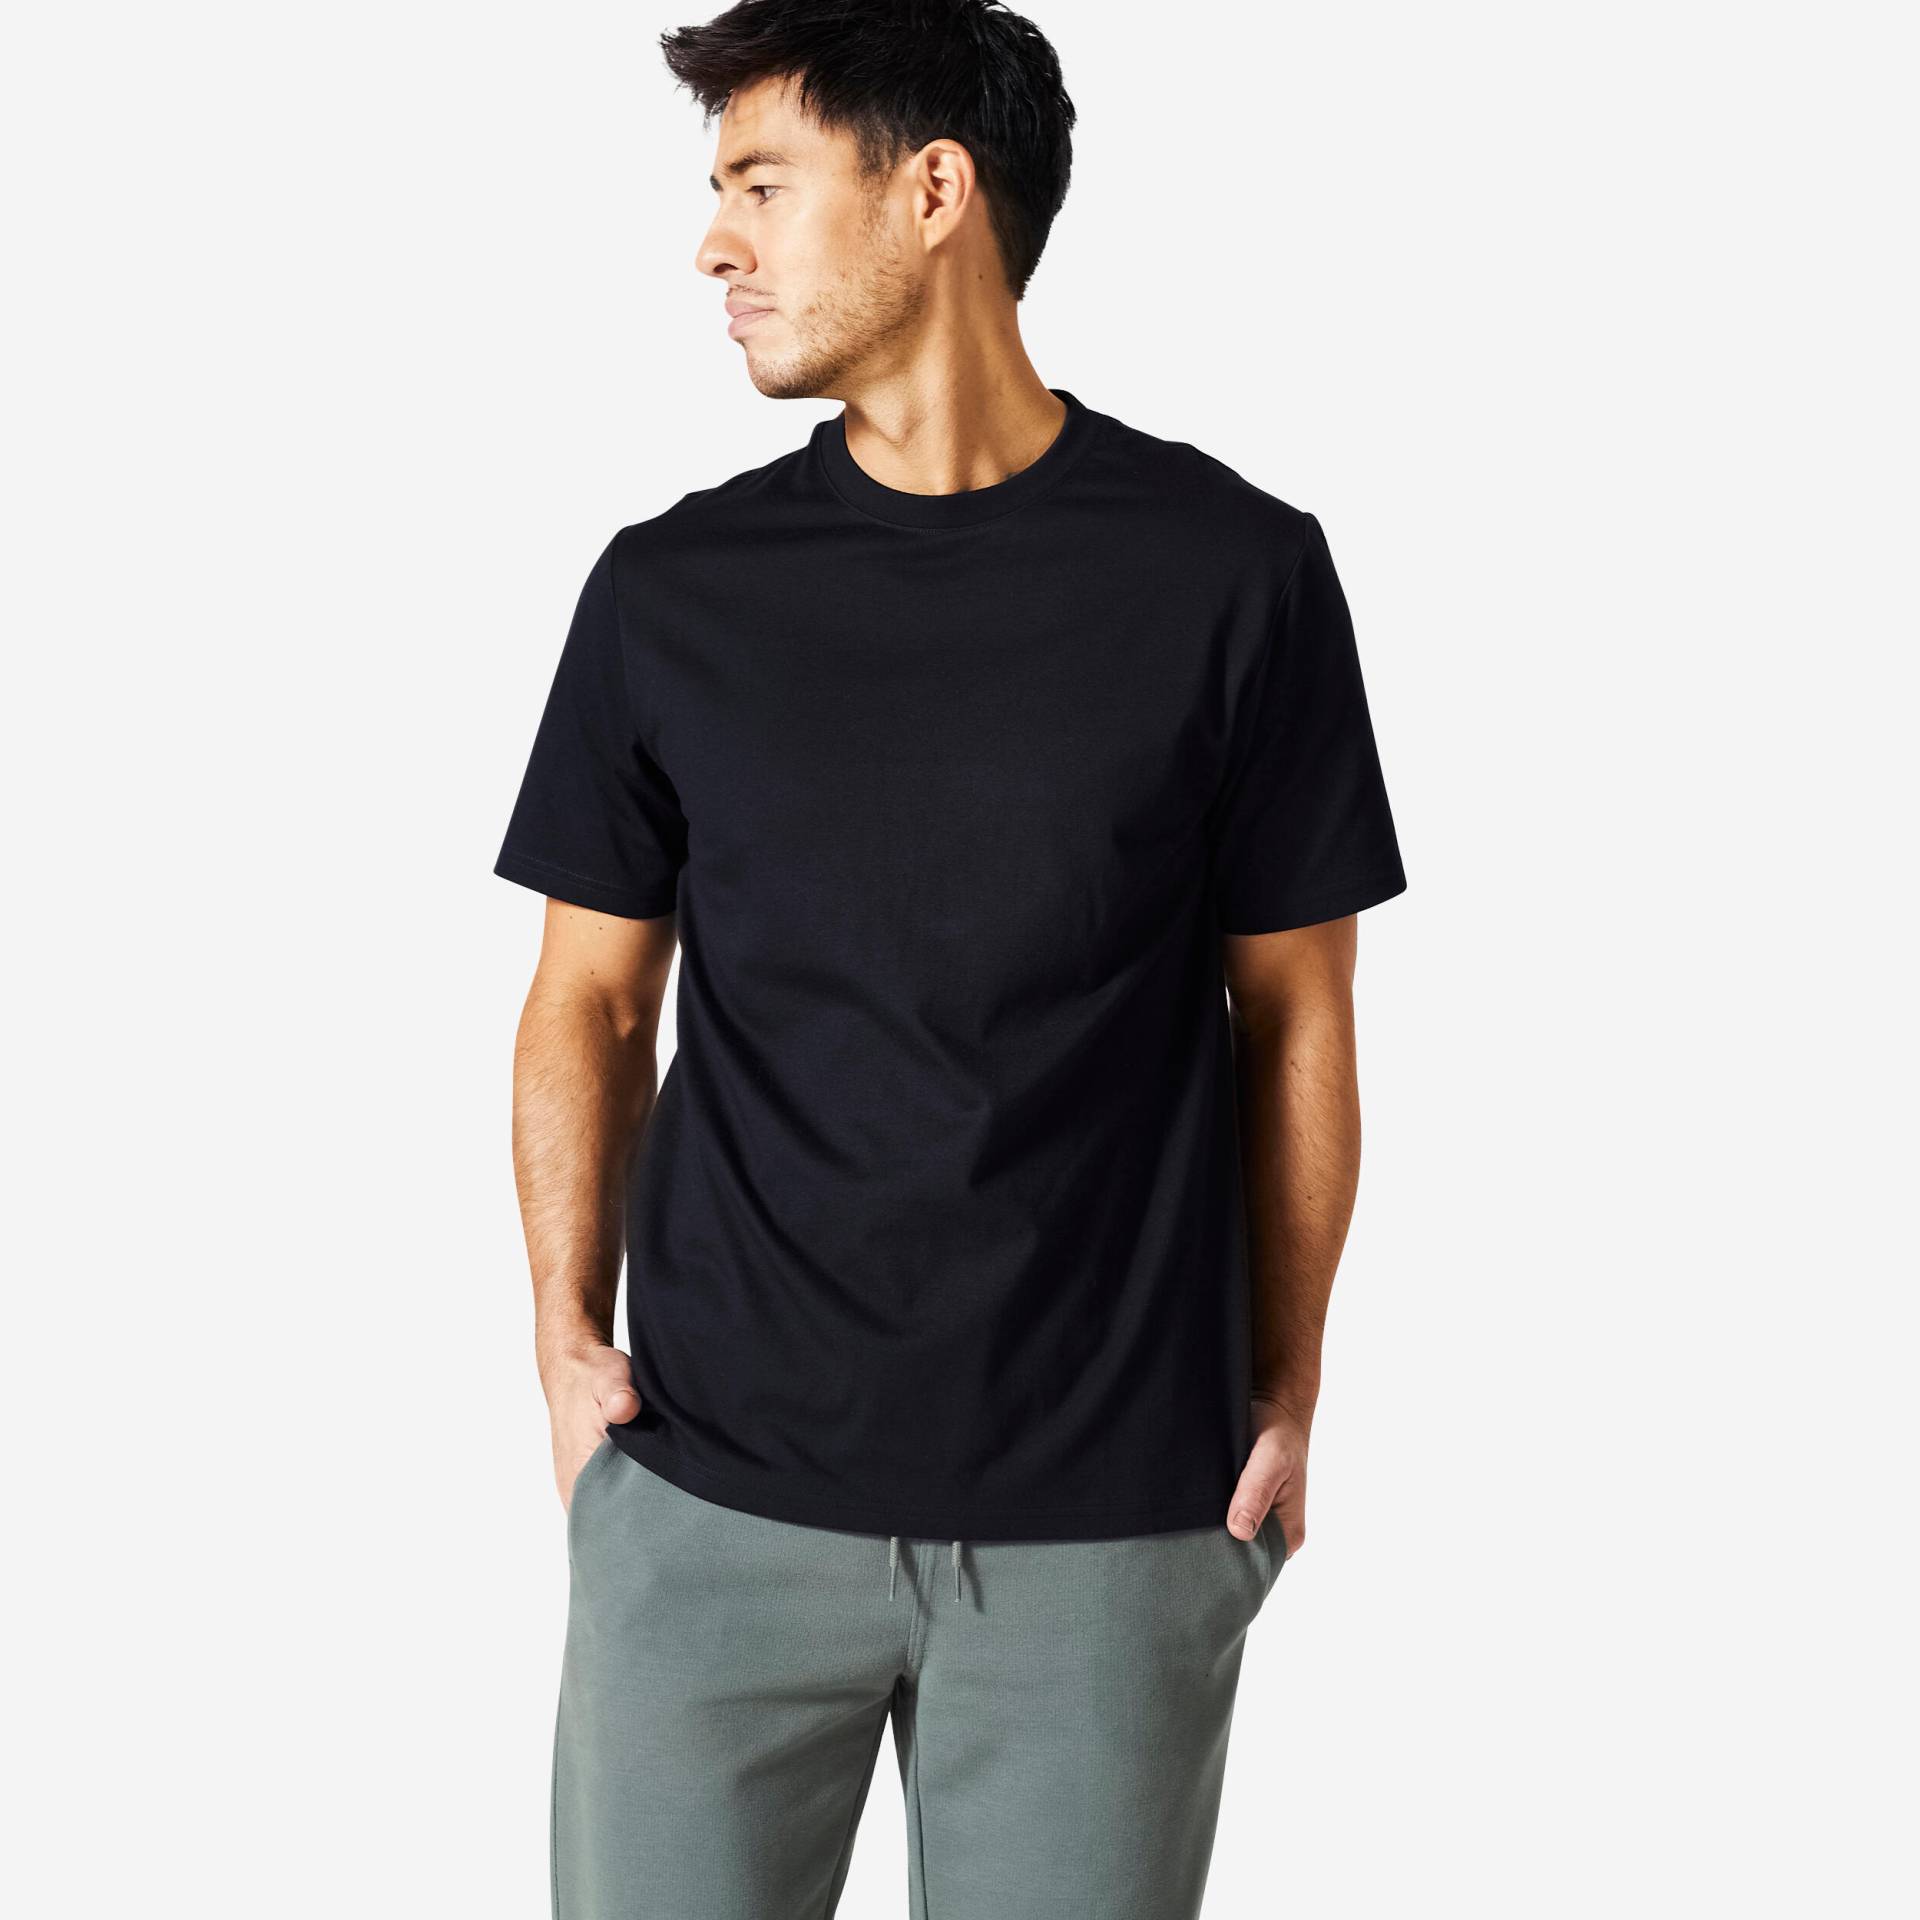 T-Shirt Herren - 500 Essentials schwarz von Domyos